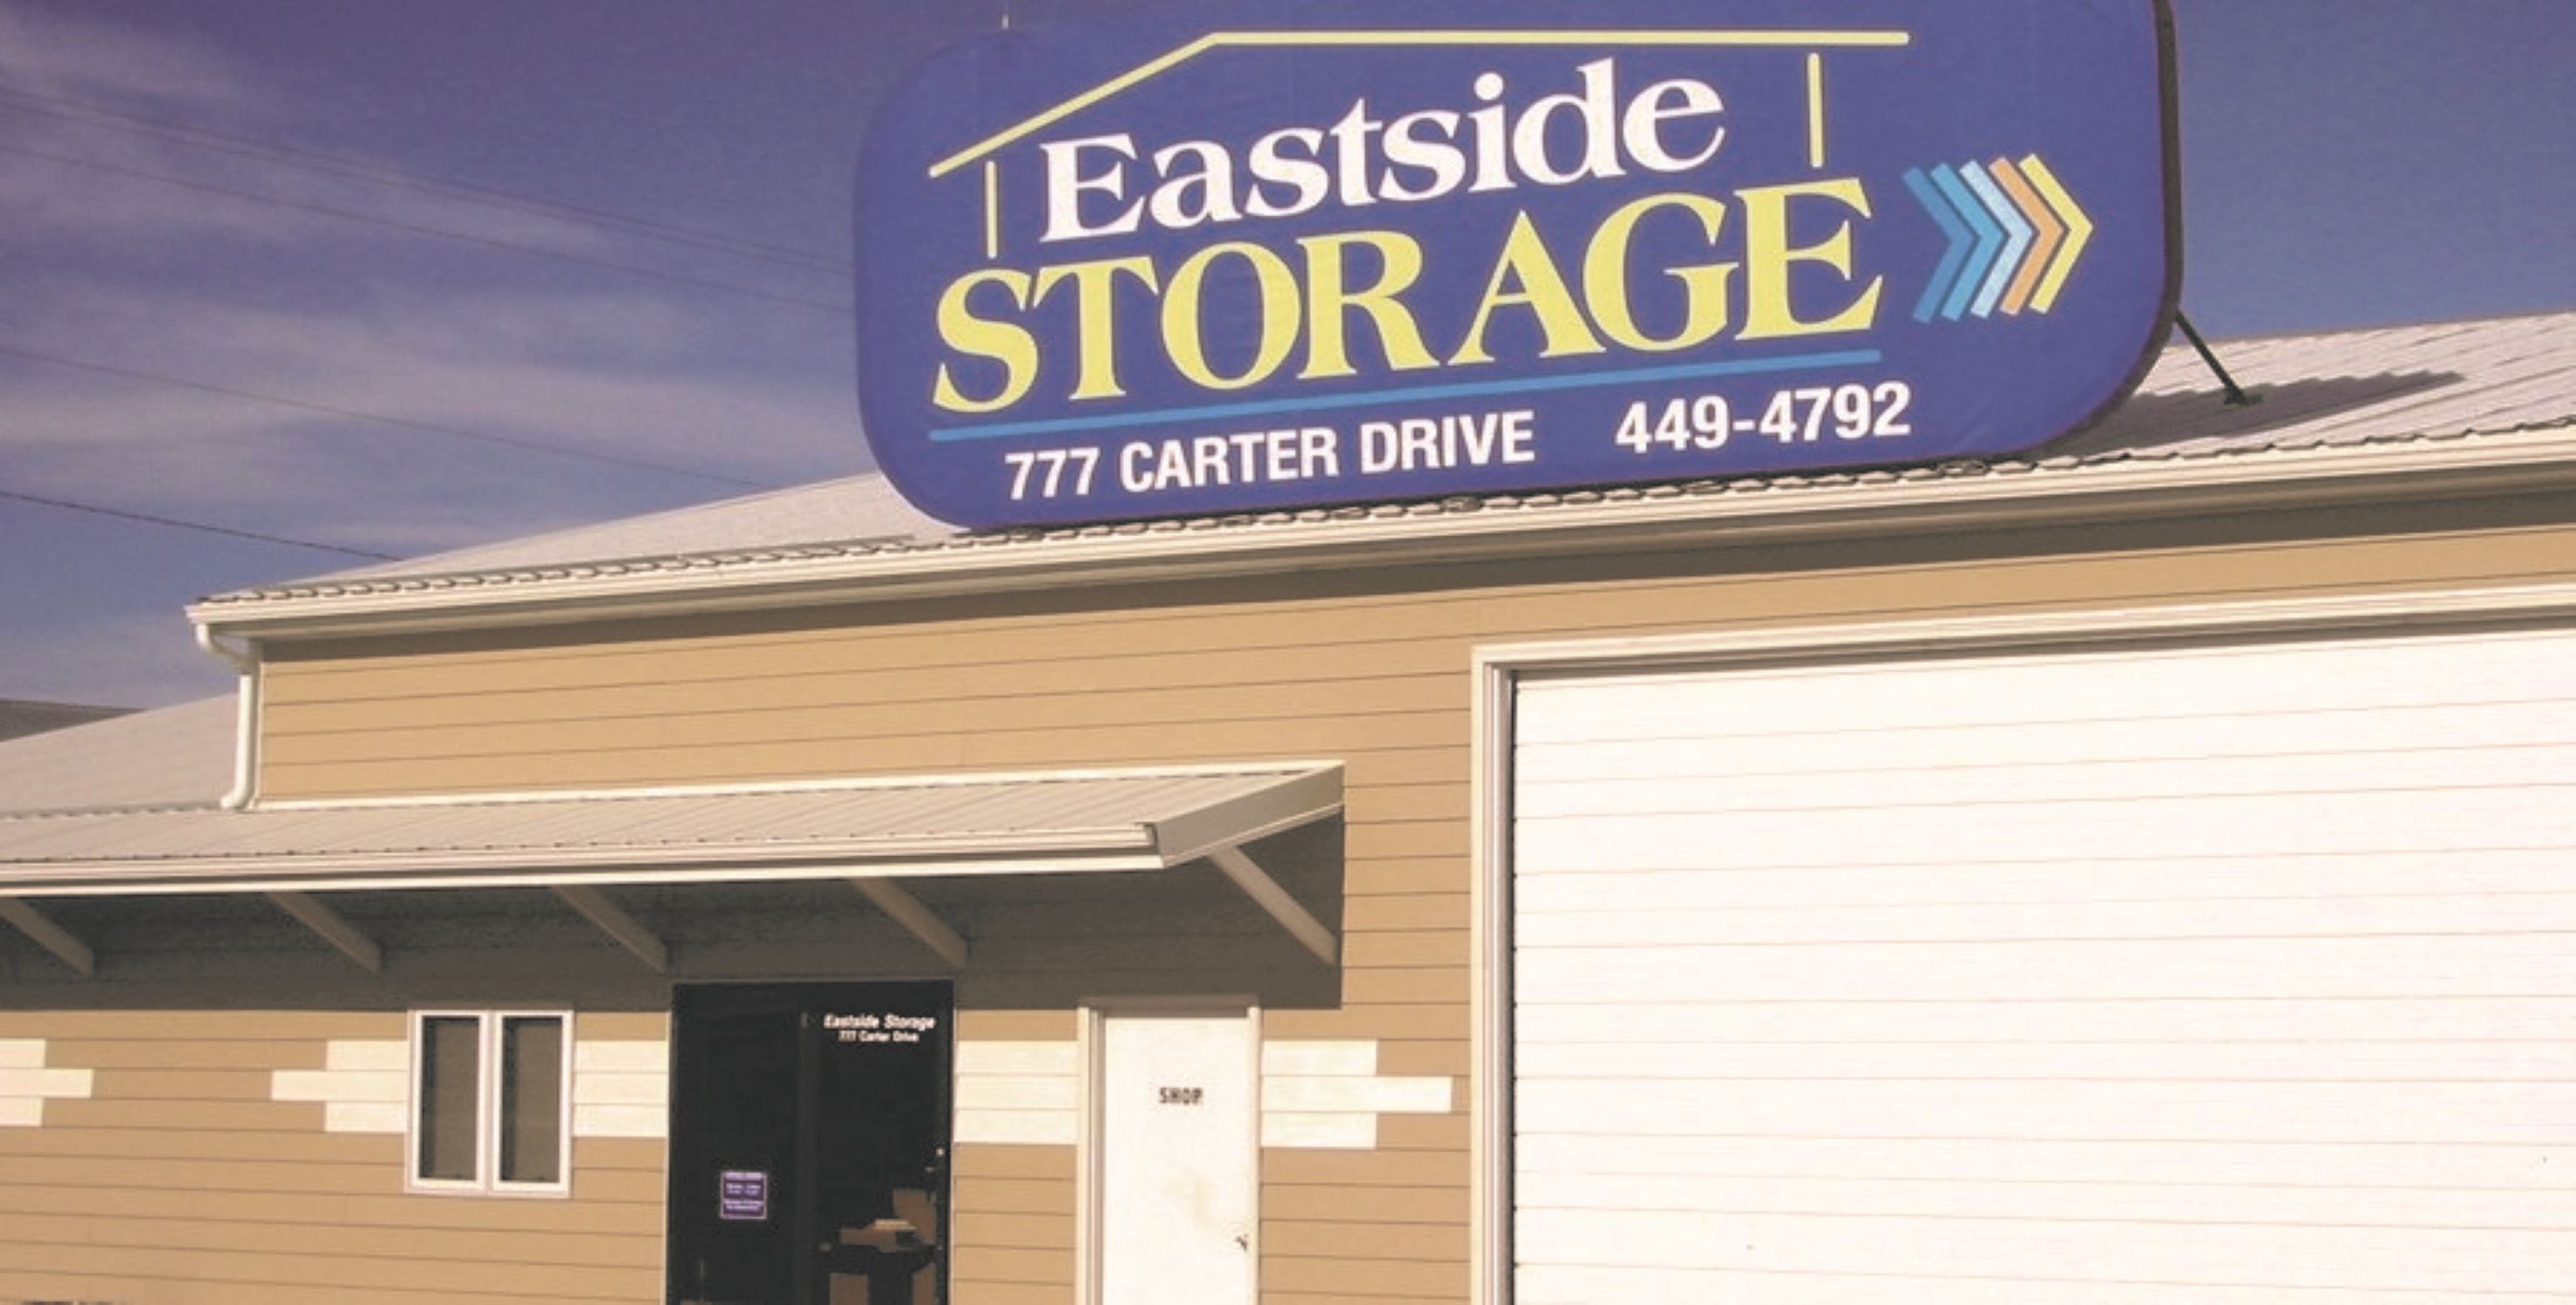 Eastside Storage